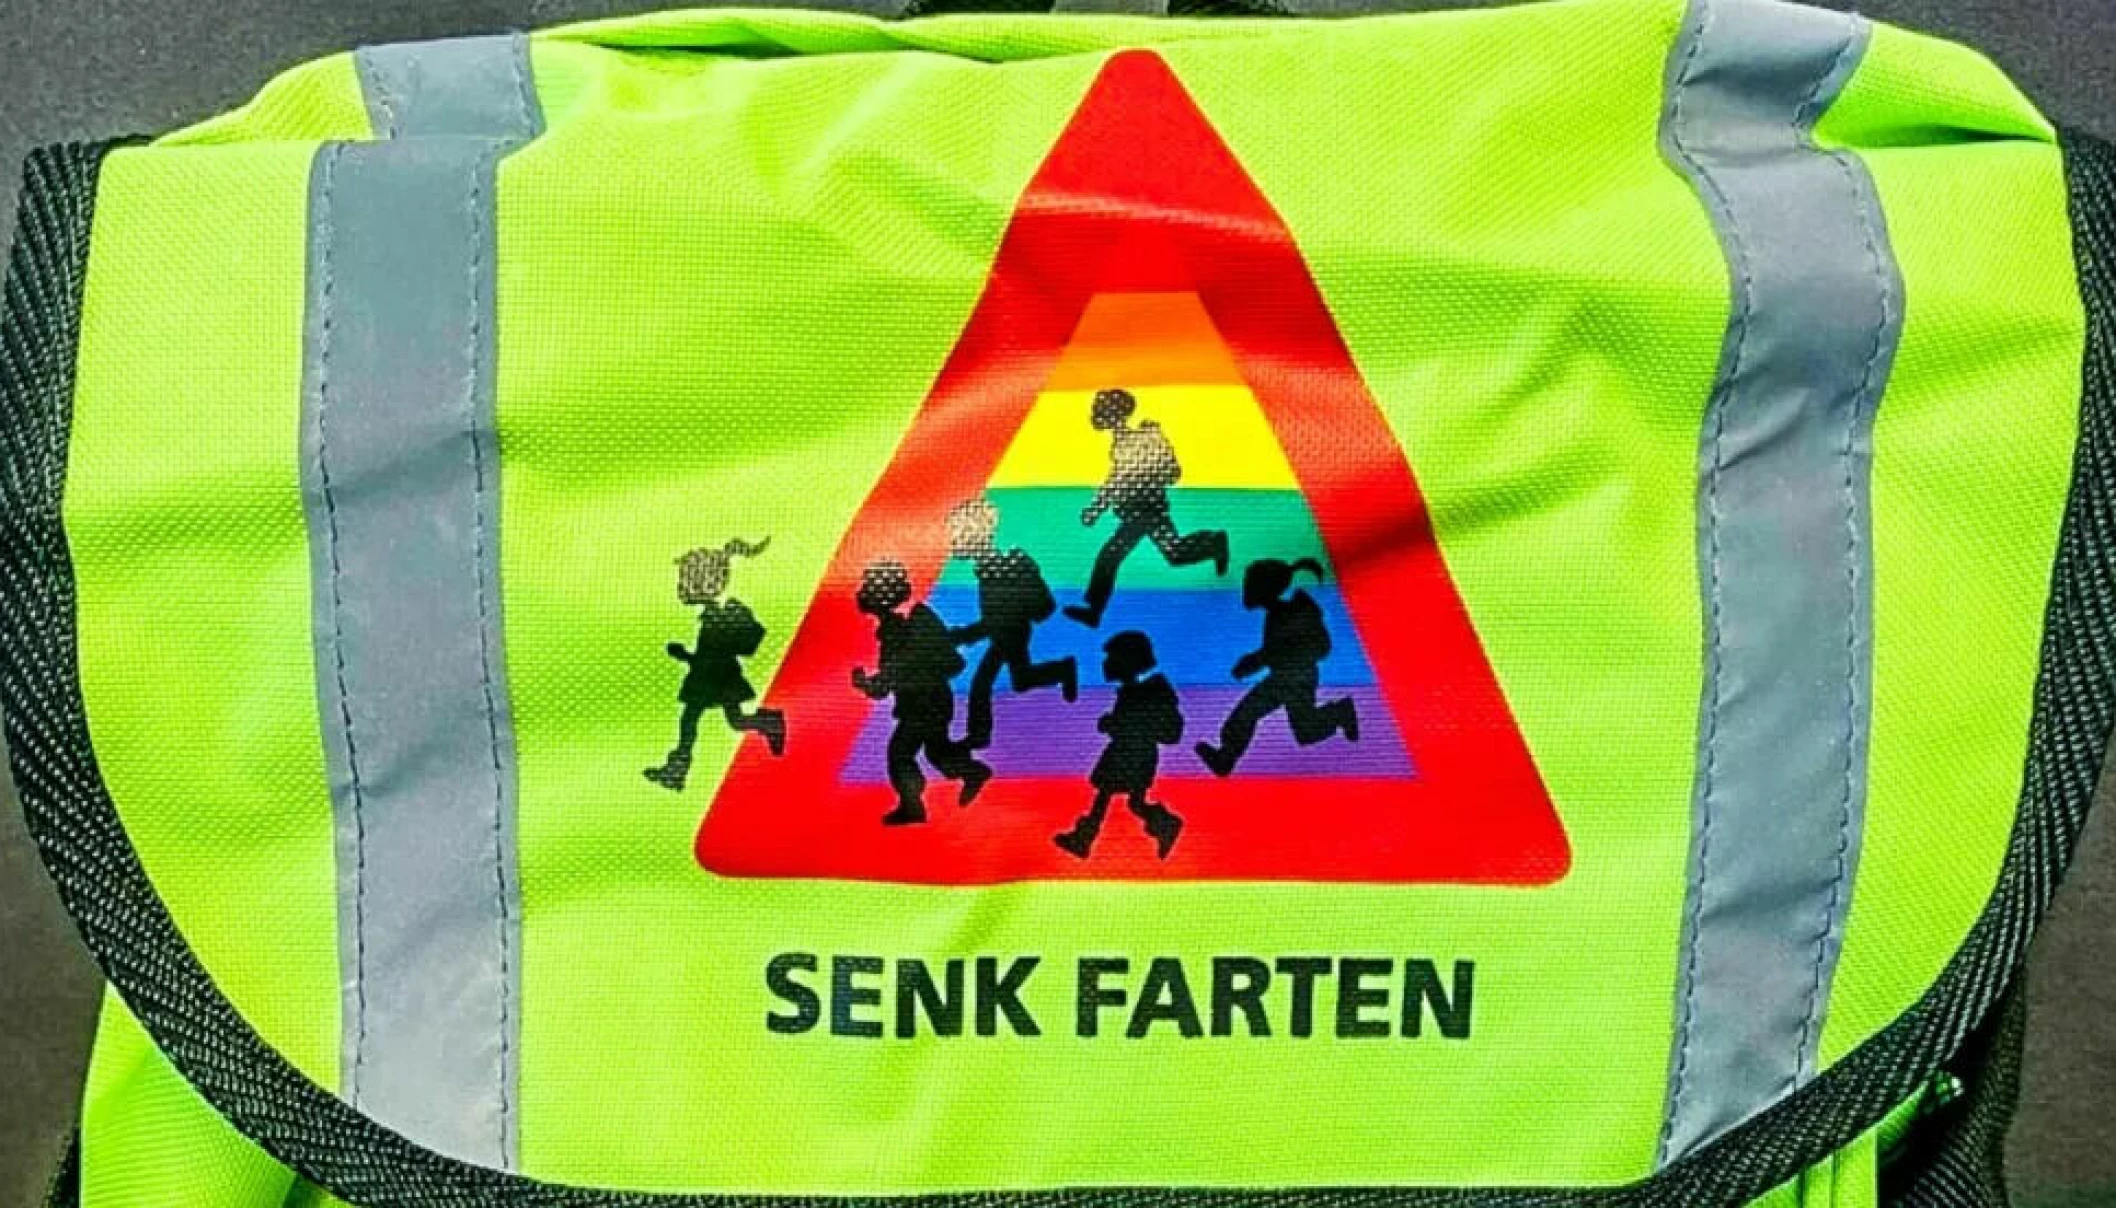 Pride-farger på skolesekk i Troms og Finnmark. (Foto: Presse.)